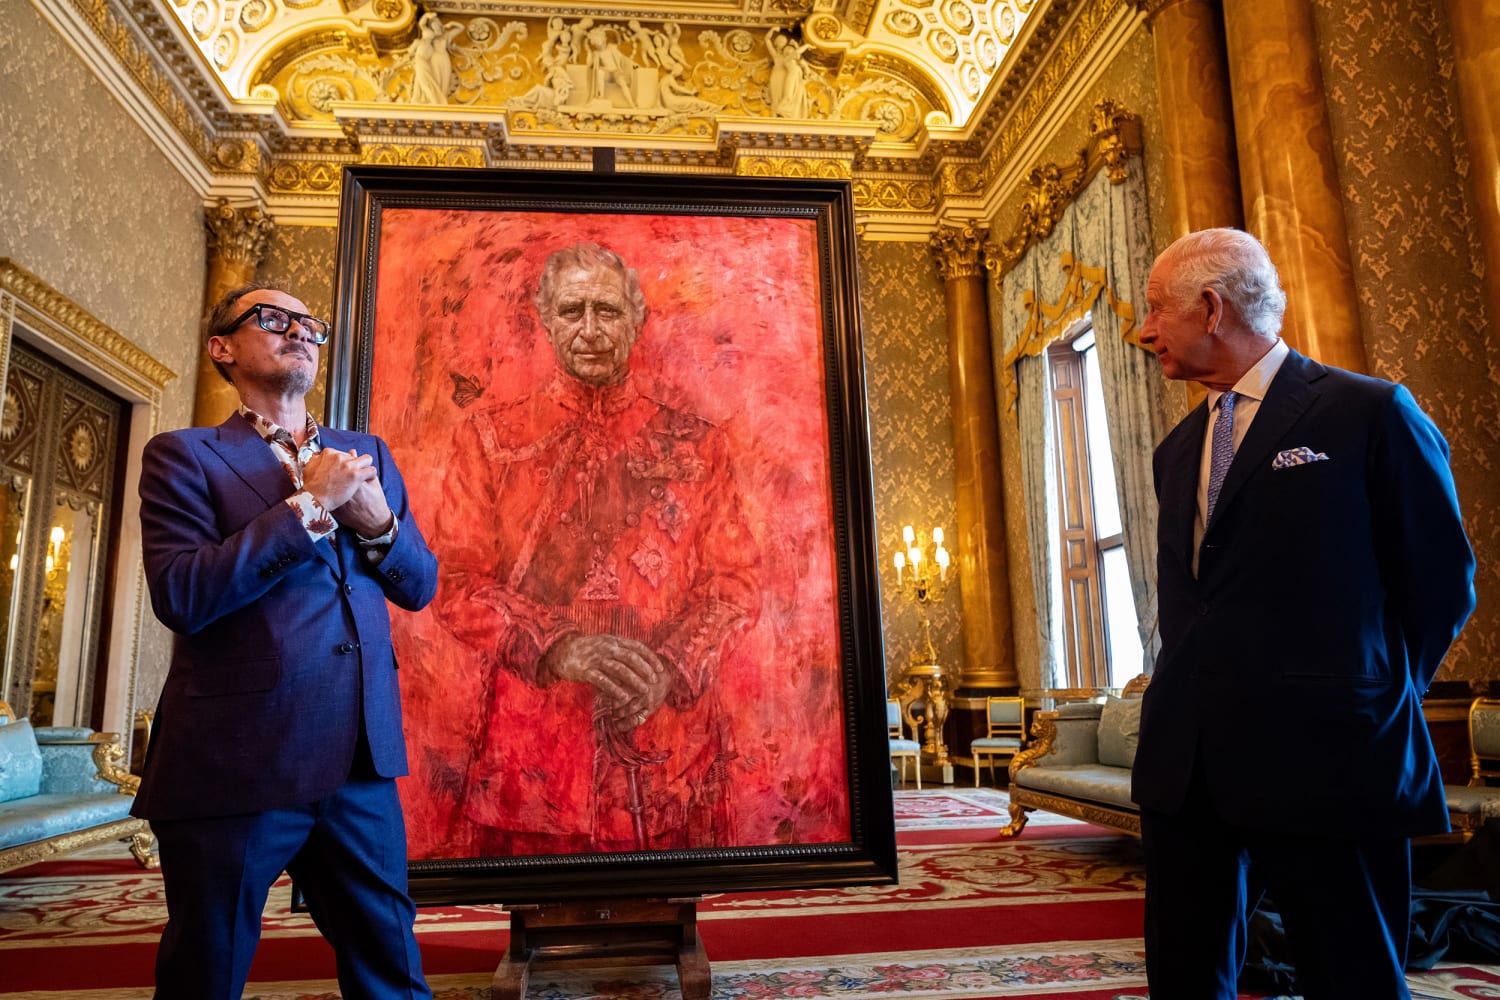 Retrato polêmico do rei Charles III deve ganhar novo local no Palácio de Buckingham após repercussão